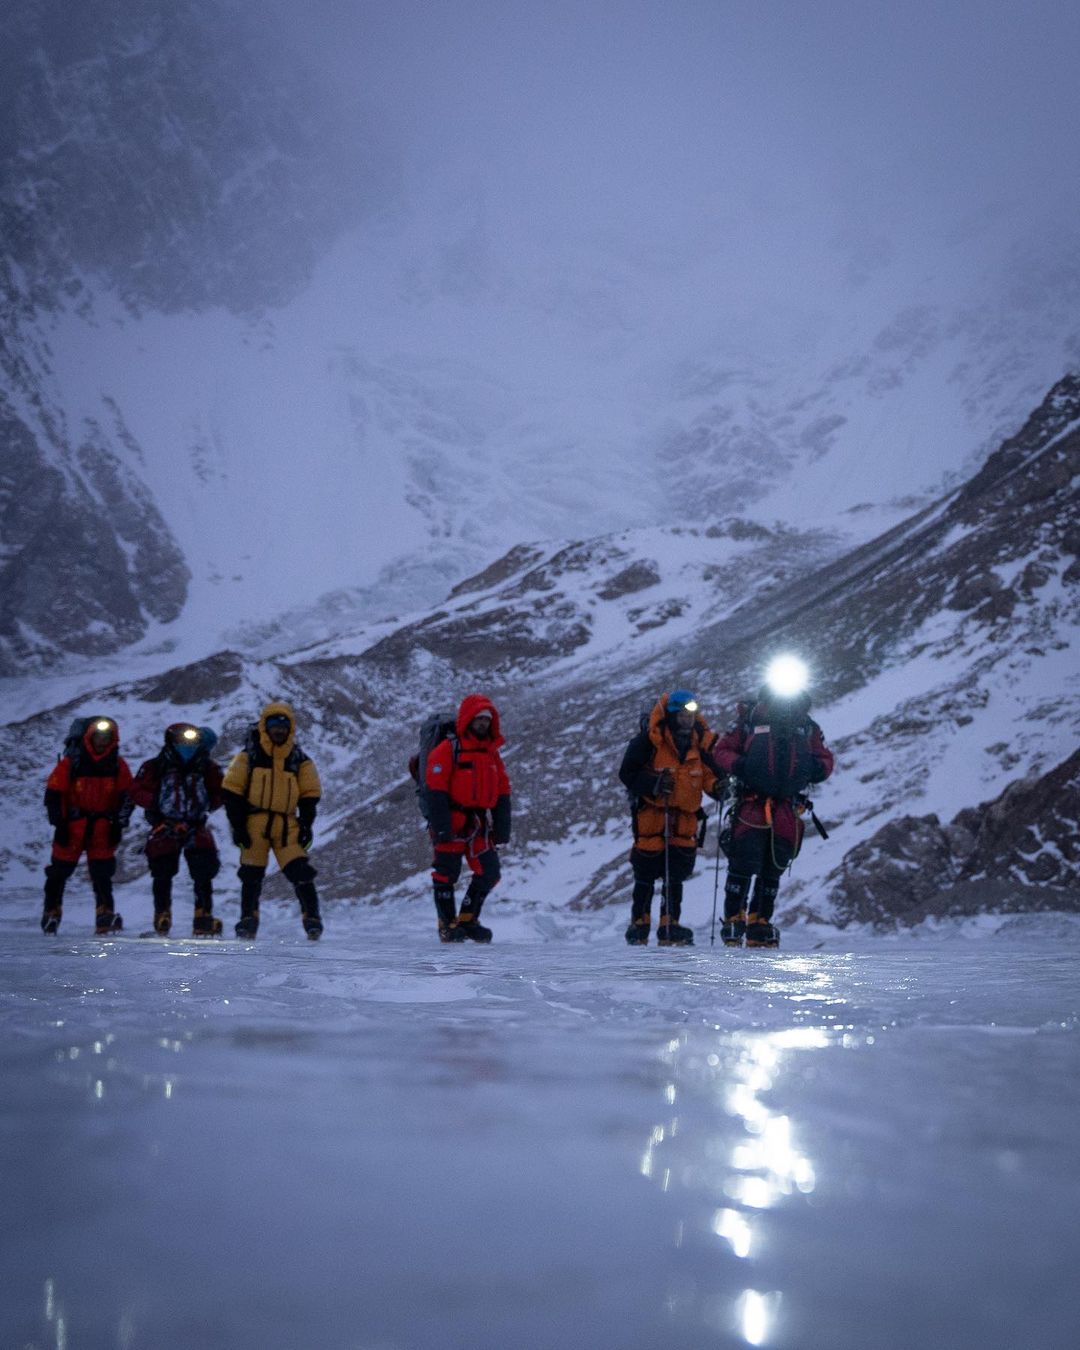 Команда Нирмала Пурджи (Nirmal Purja) на леднике у базового лагеря восьмитысячника К2